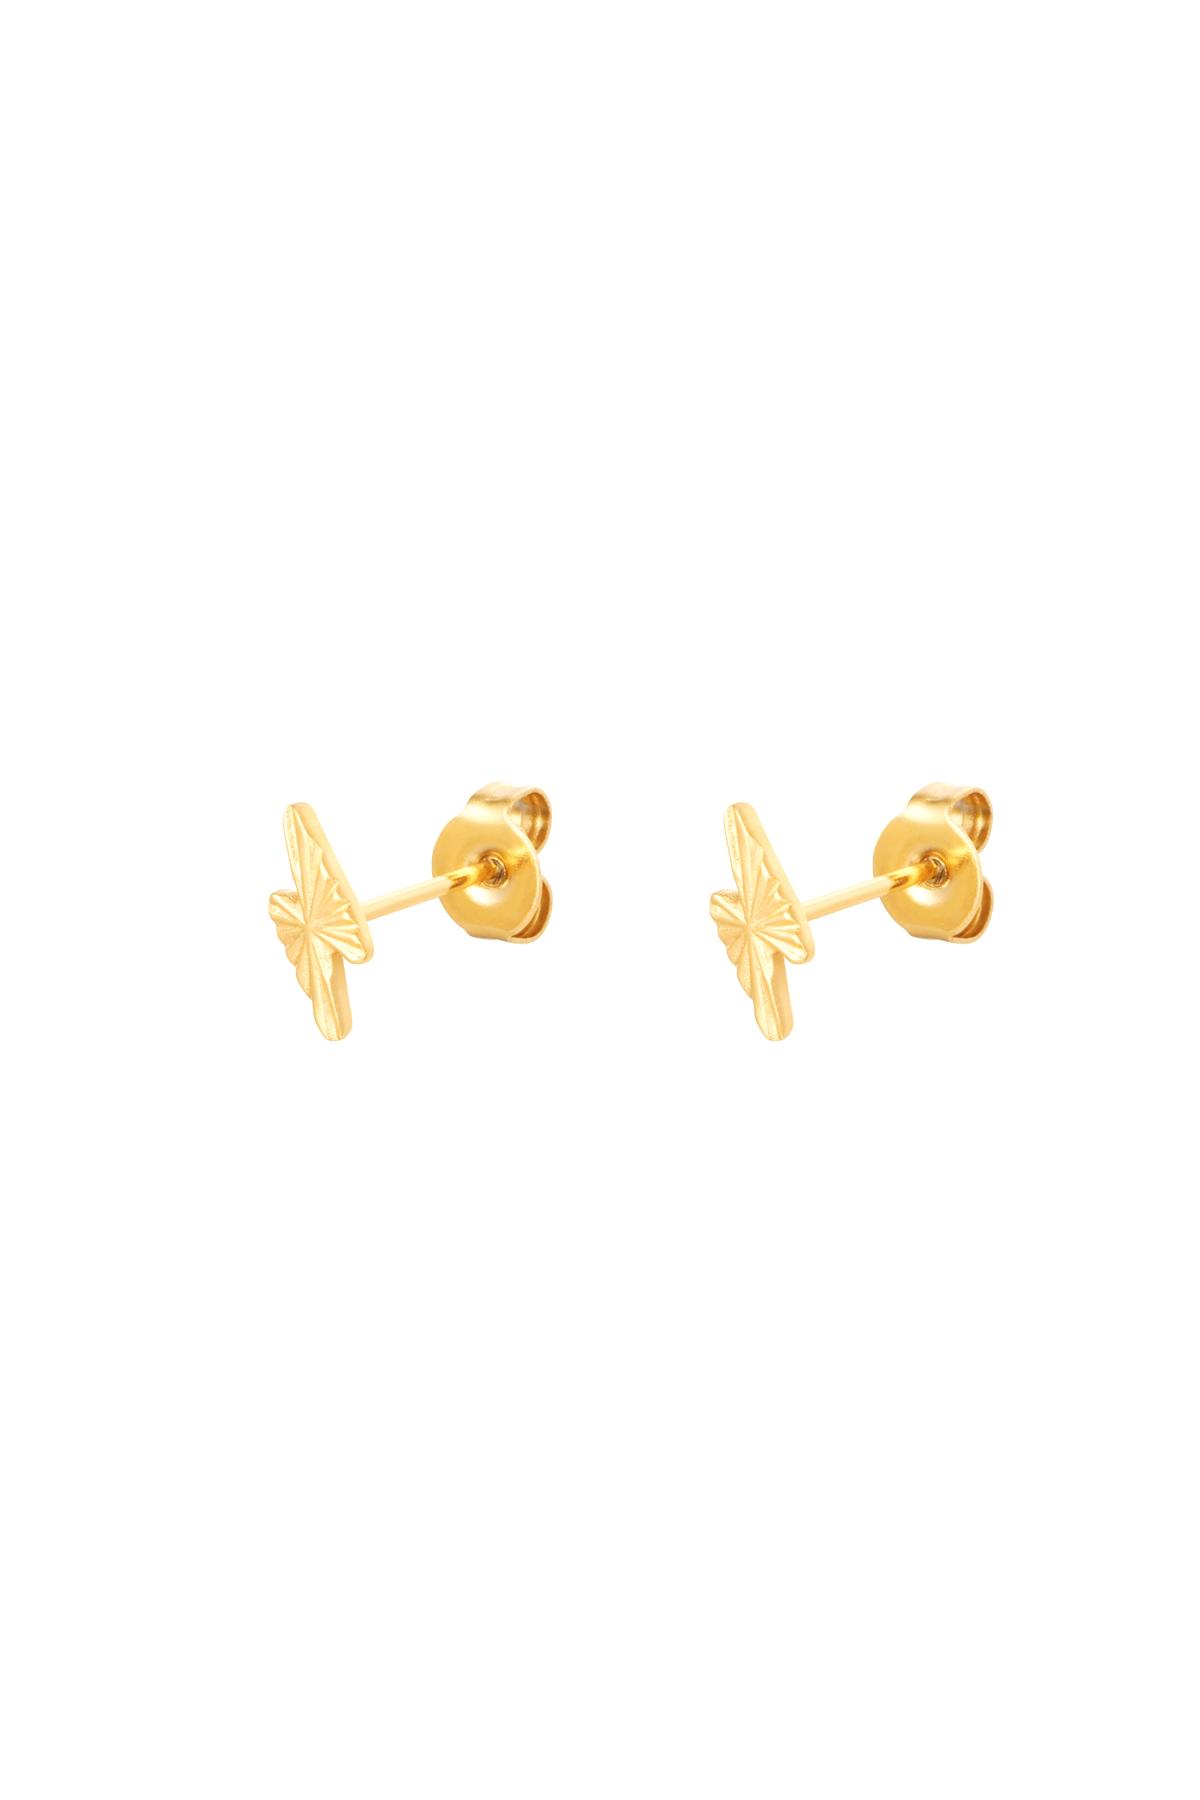 Stud Earrings Lightning Bolt Gold Stainless Steel h5 